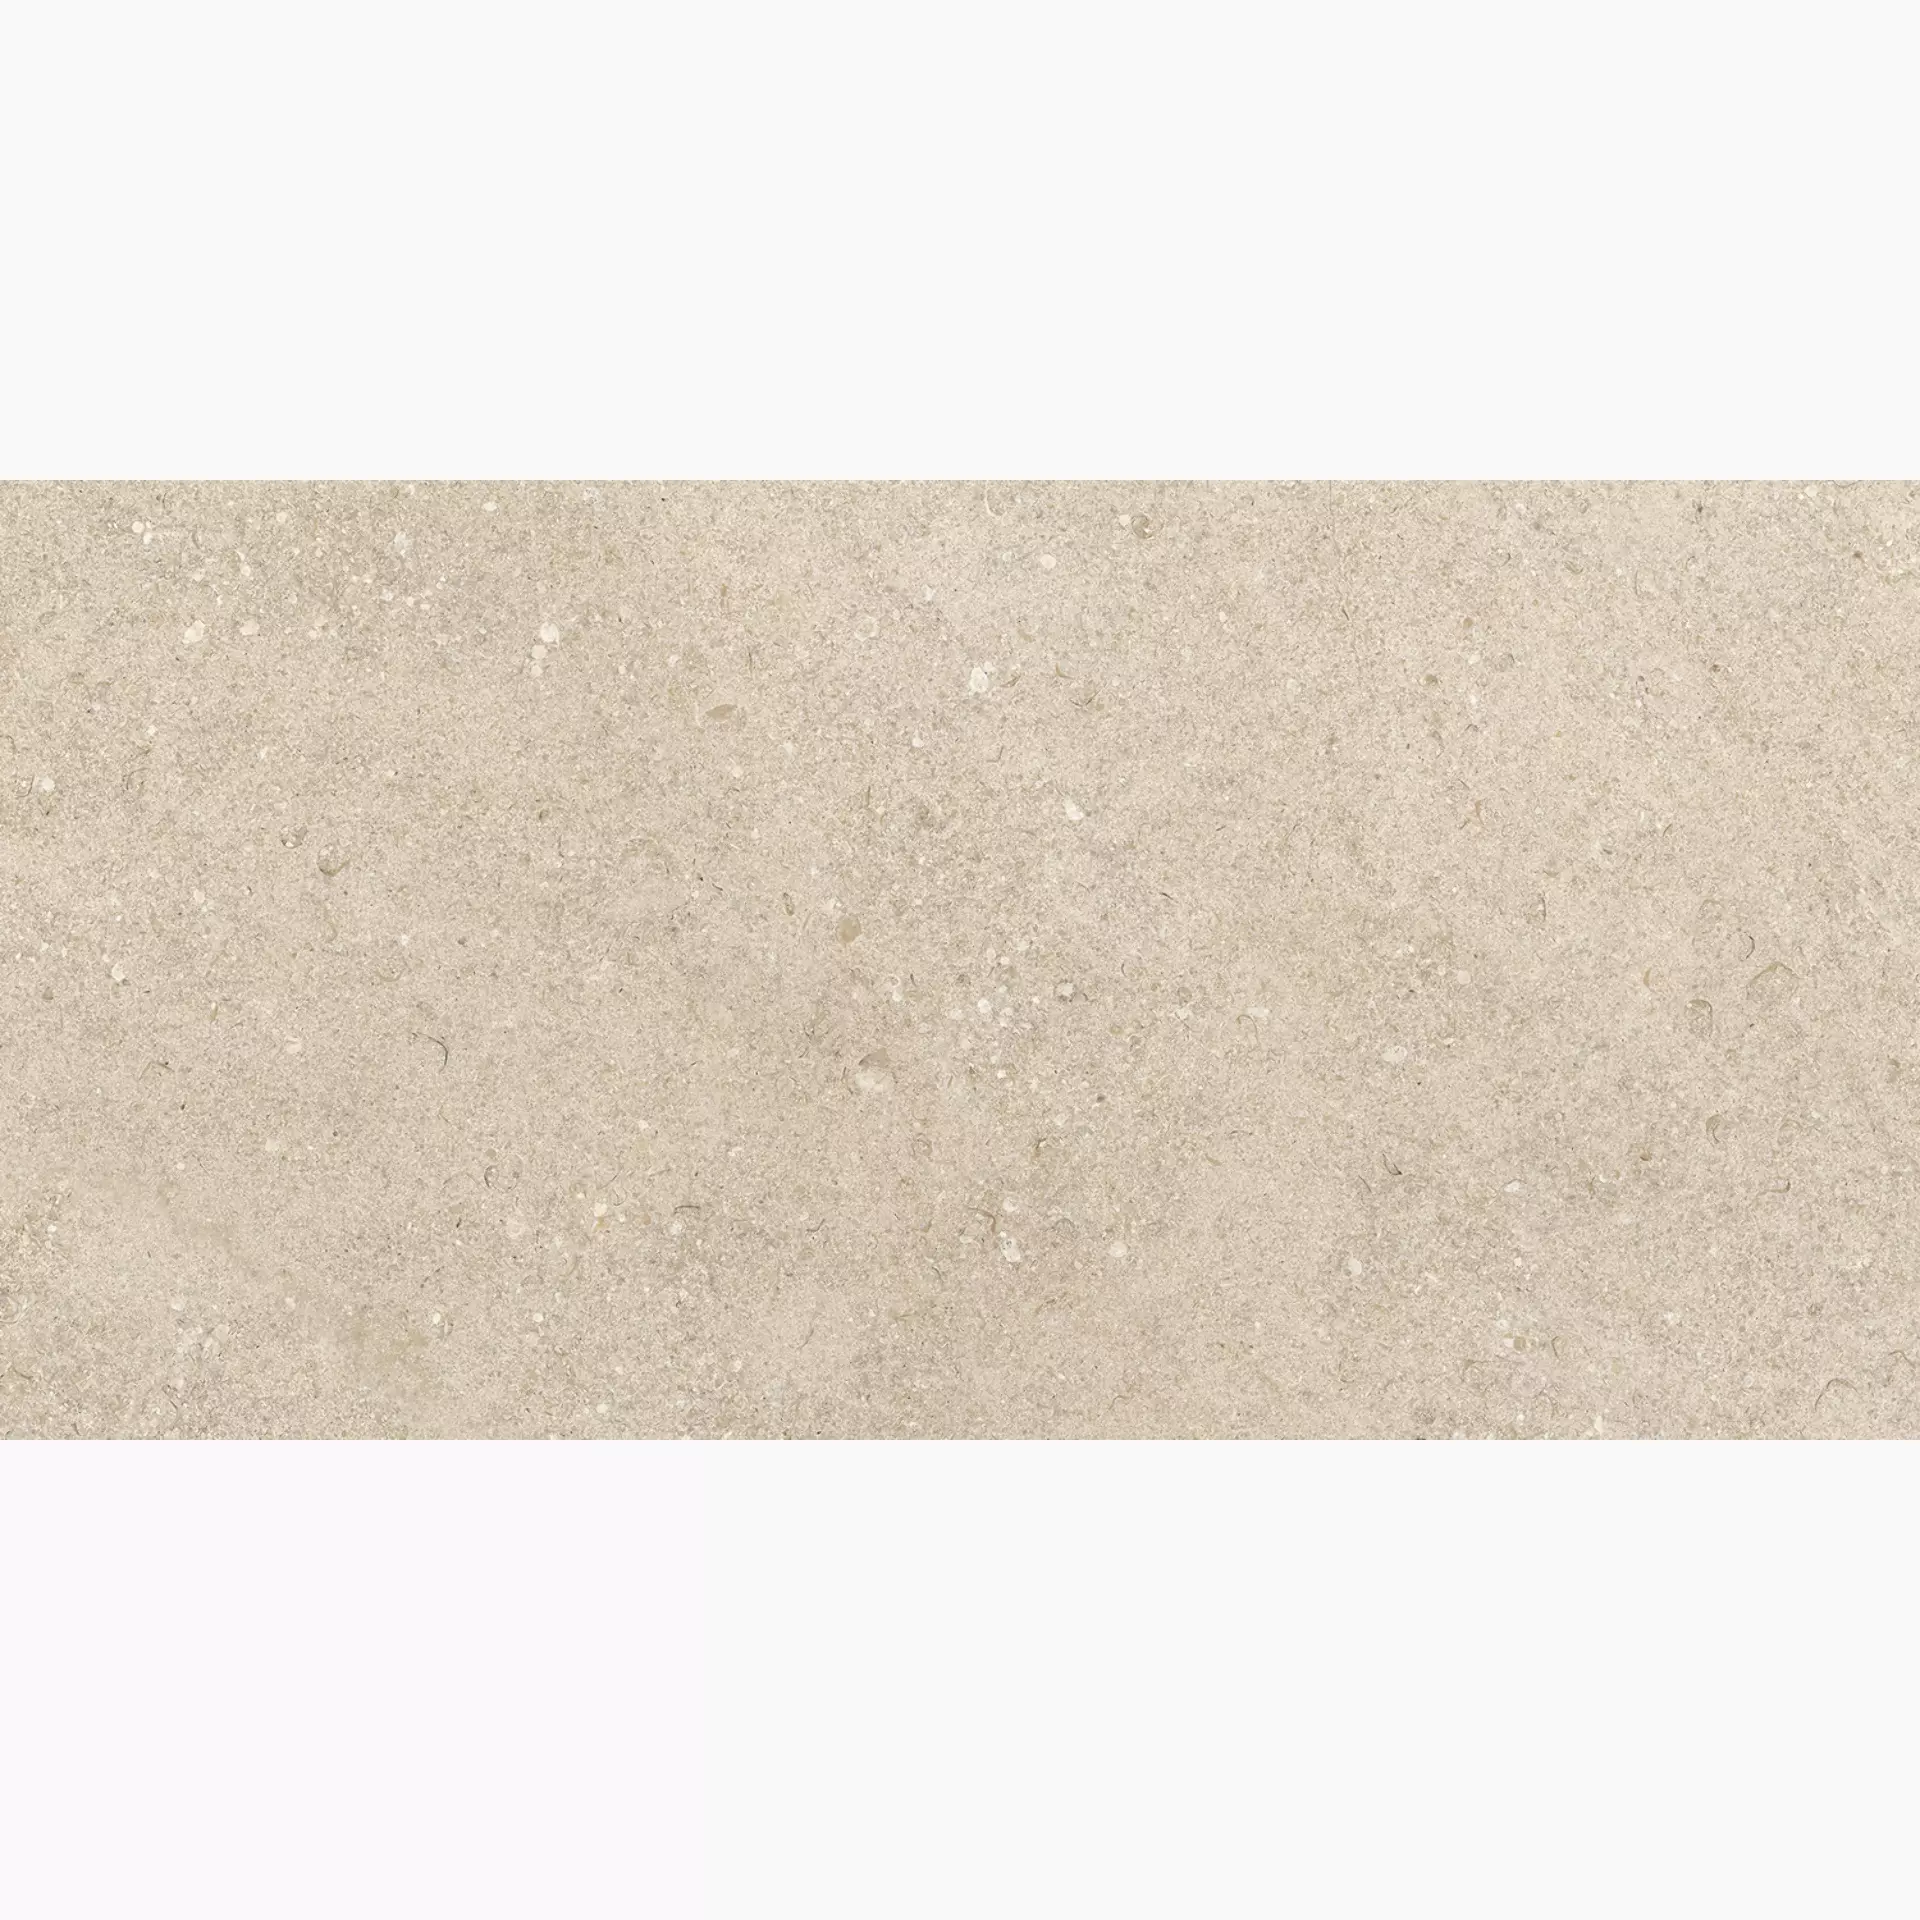 Ragno Kalkstone Sand Strutturato RAJQ 30x60cm rektifiziert 9,5mm